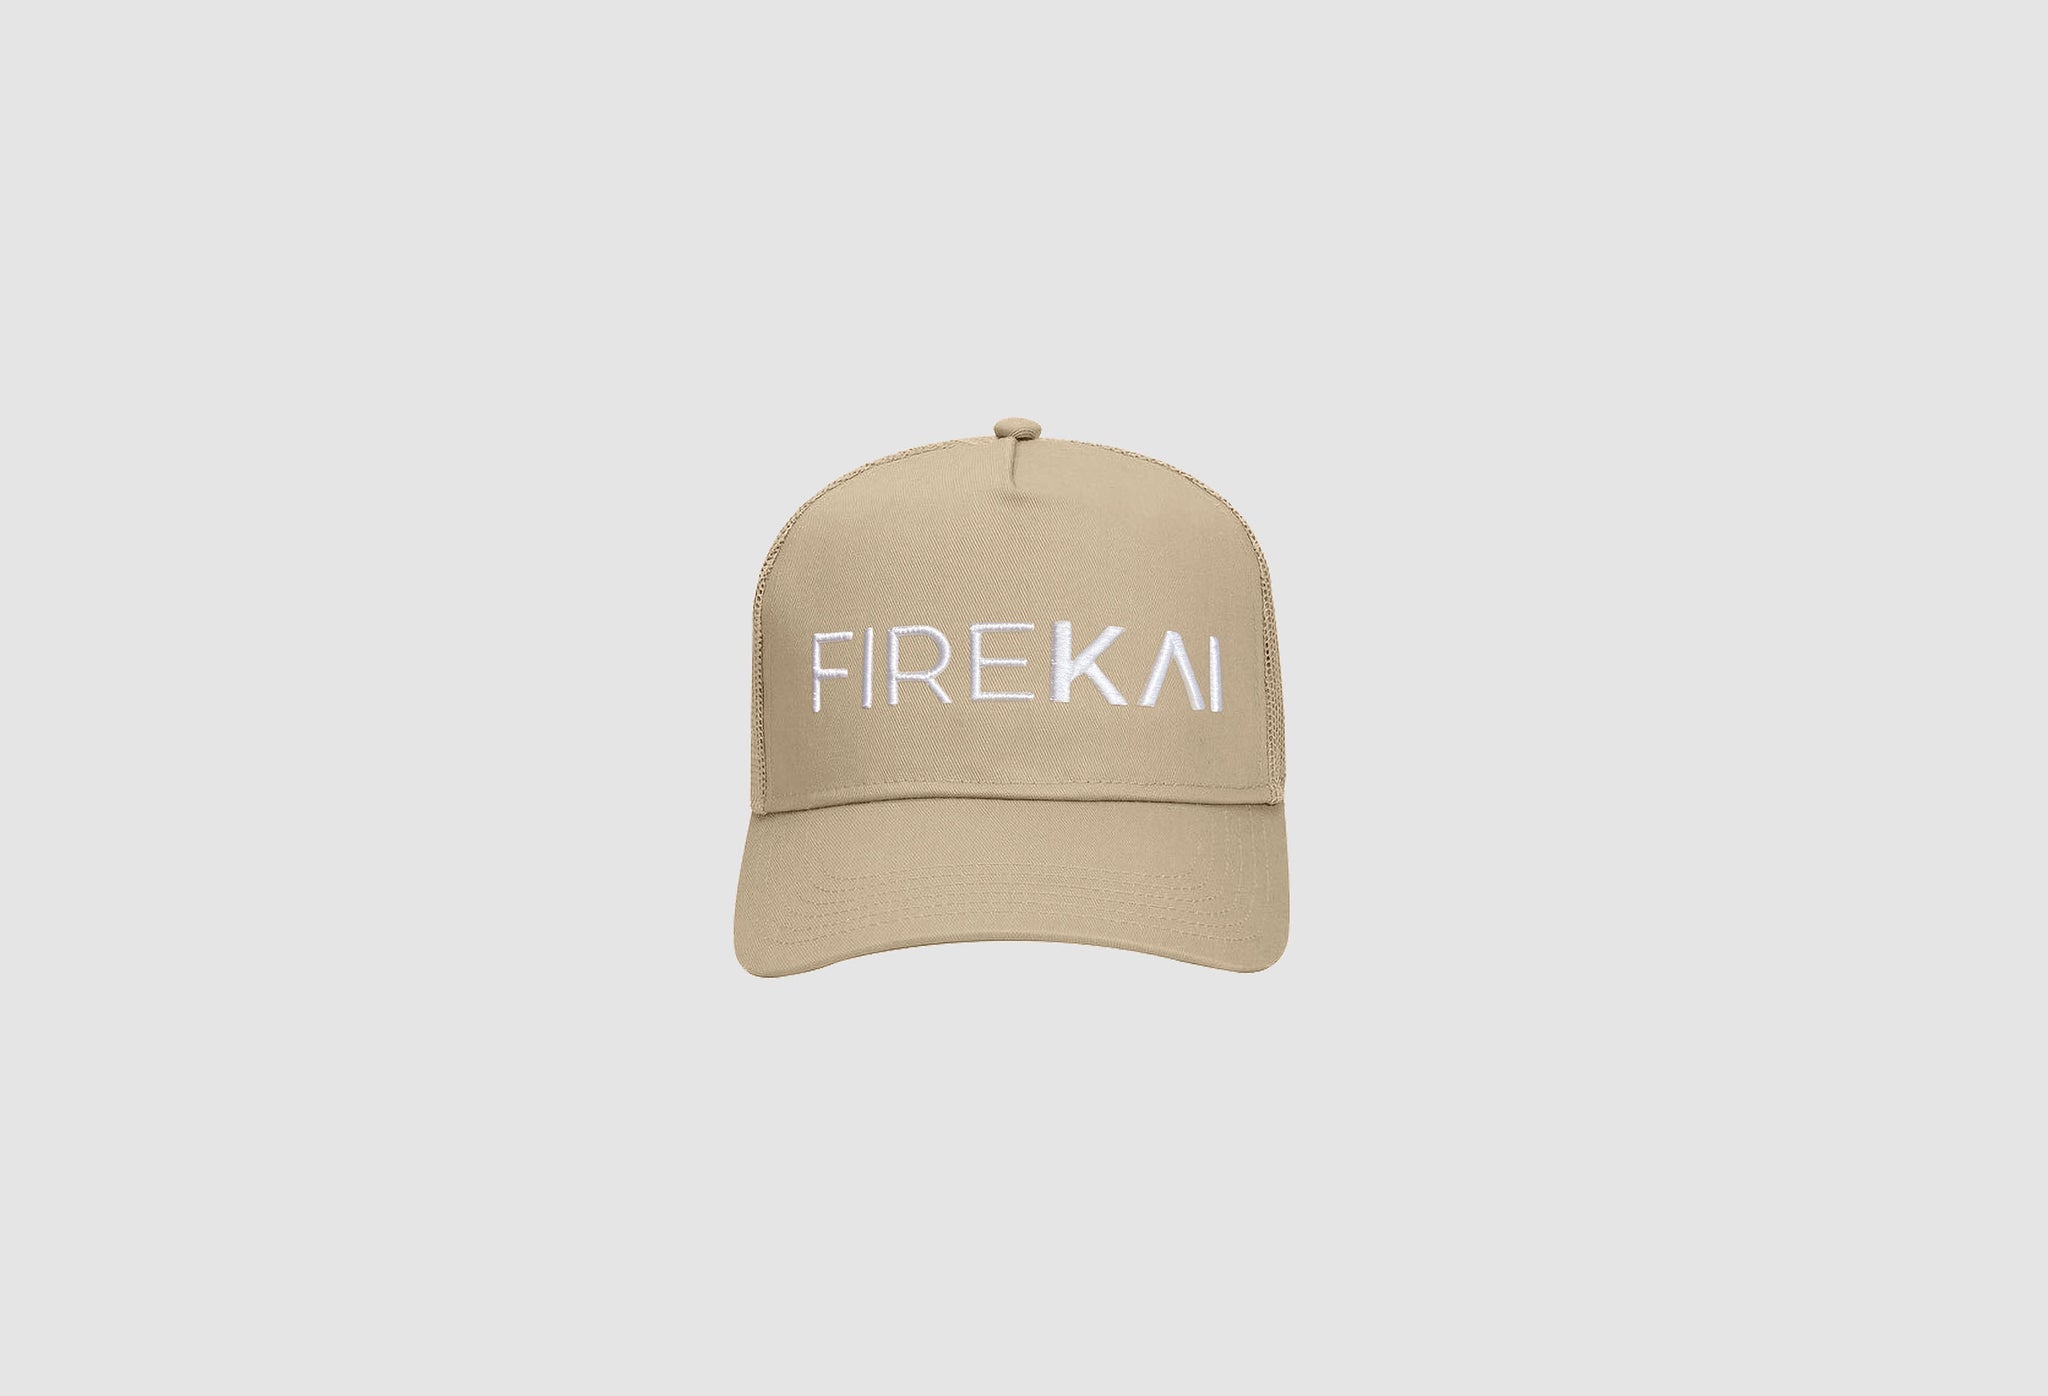 Fire Kai Khaki Mesh Hat White Text Front View